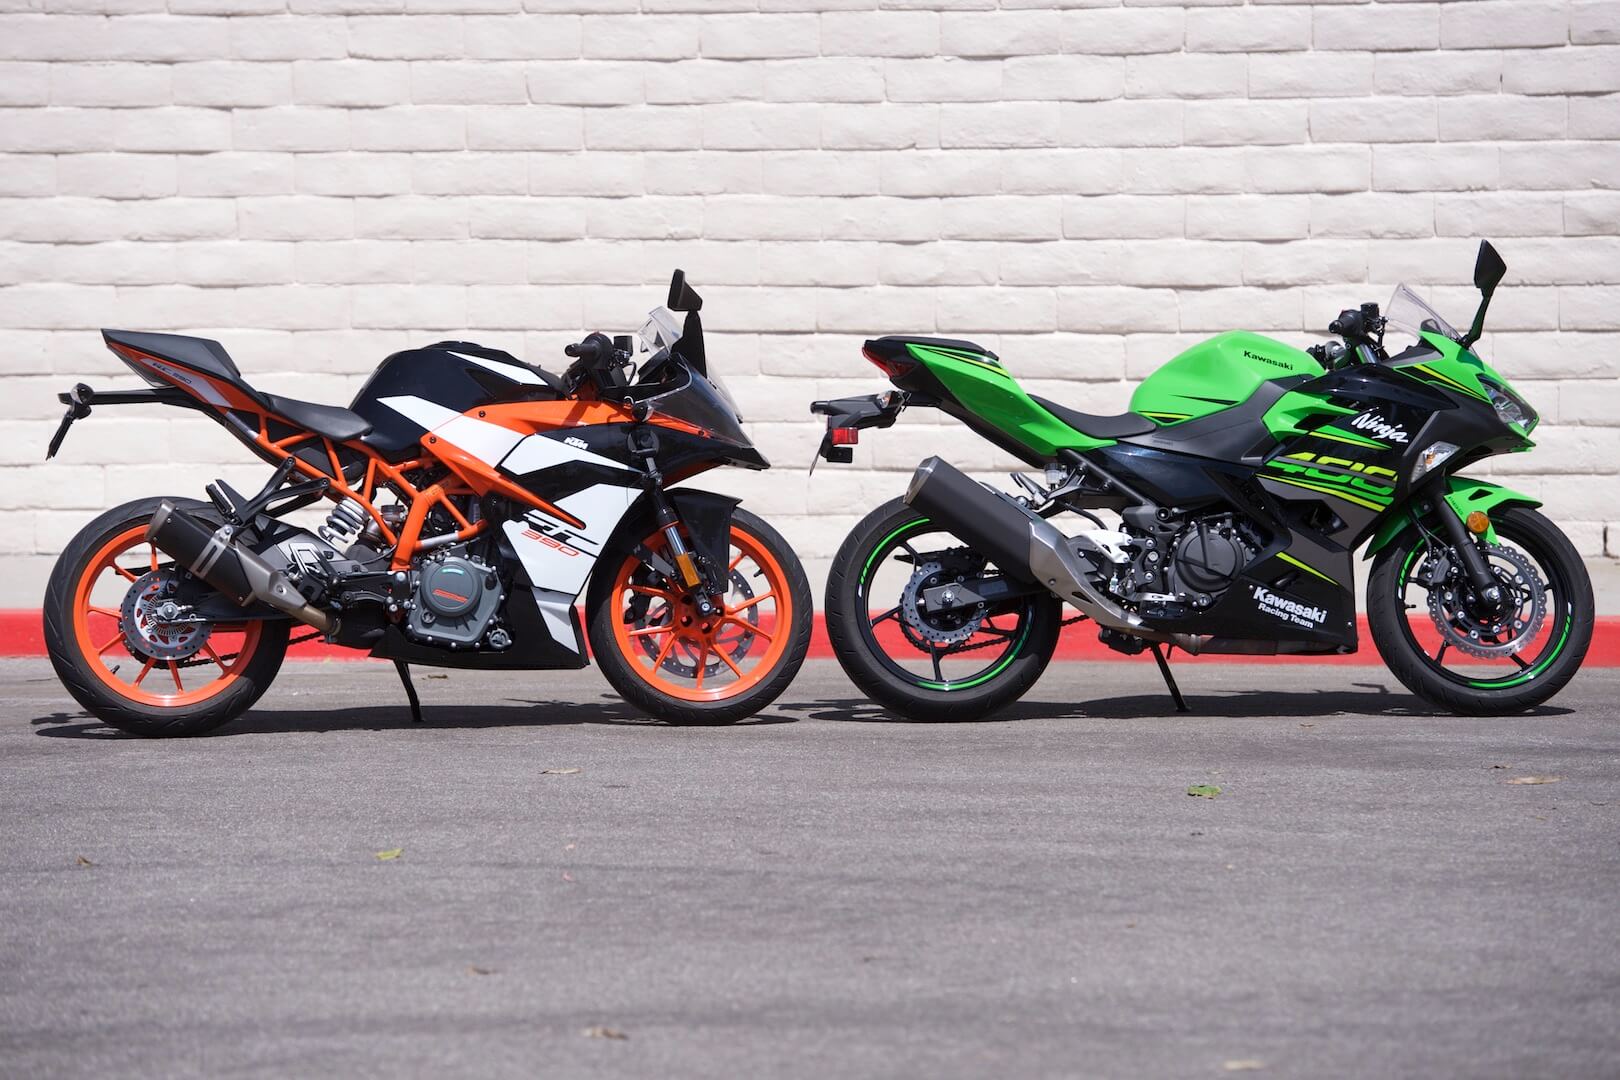 Doua motociclete sport din clasa usoara - motociclete